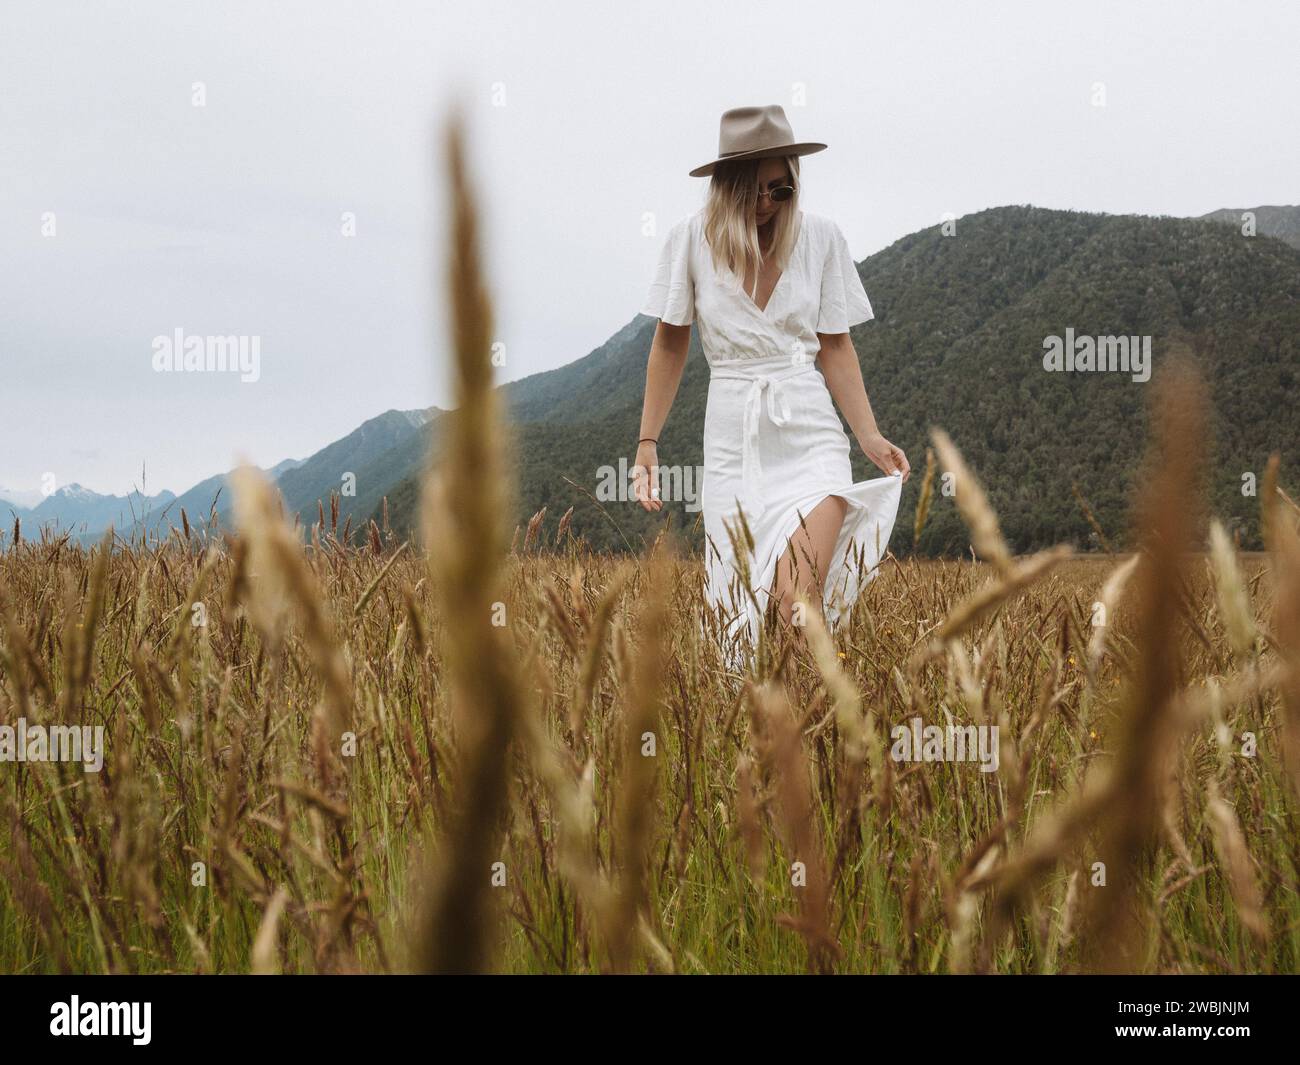 Un'immagine di una ragazza con un abito e un cappello bianco, passeggiando nel sereno prato sulla strada per Milford Sounds, nella splendida nuova Zelanda. Foto Stock